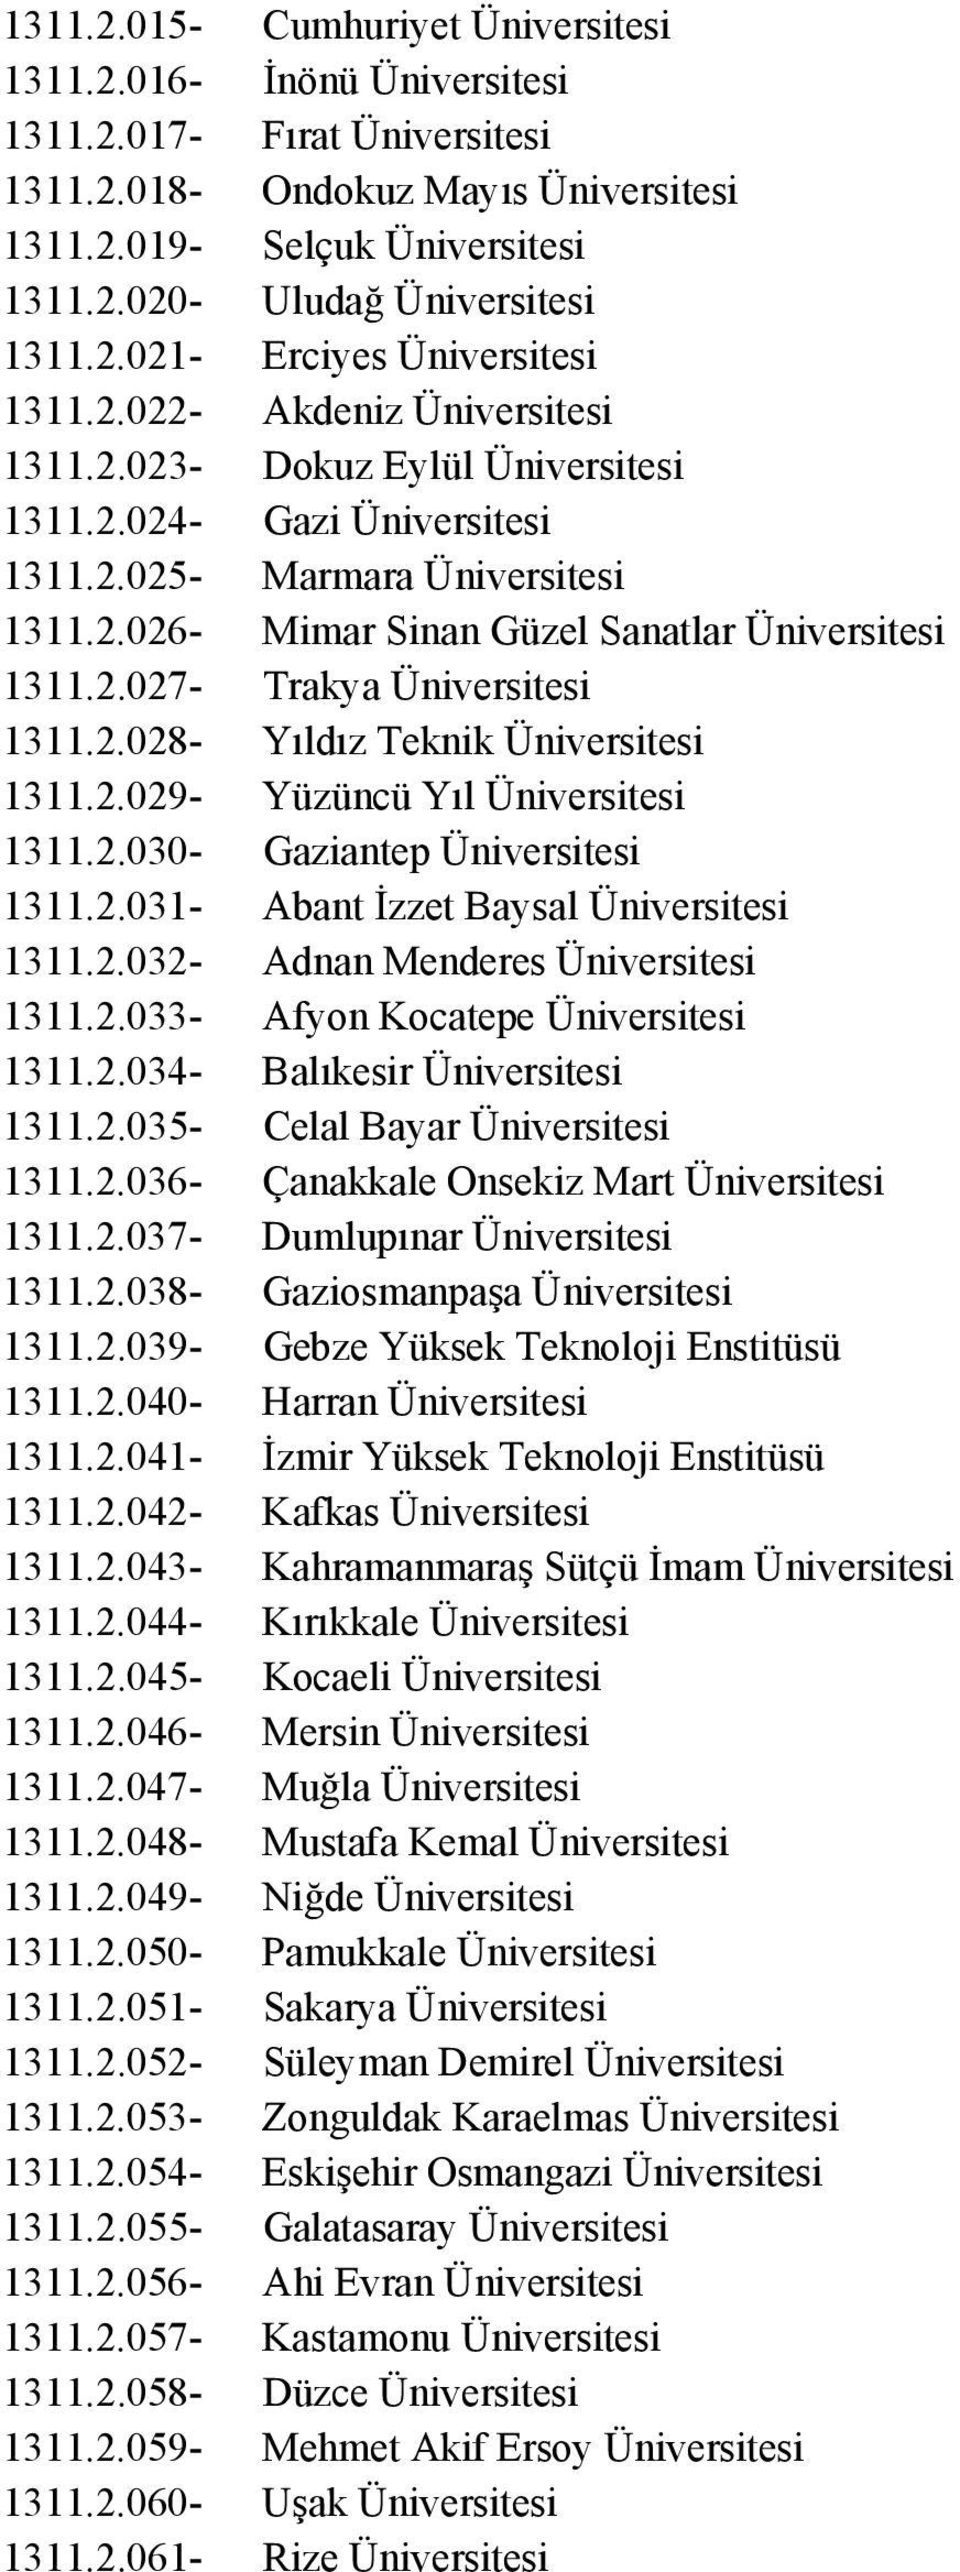 2.027- Trakya Üniversitesi 1311.2.028- Yıldız Teknik Üniversitesi 1311.2.029- Yüzüncü Yıl Üniversitesi 1311.2.030- Gaziantep Üniversitesi 1311.2.031- Abant İzzet Baysal Üniversitesi 1311.2.032- Adnan Menderes Üniversitesi 1311.